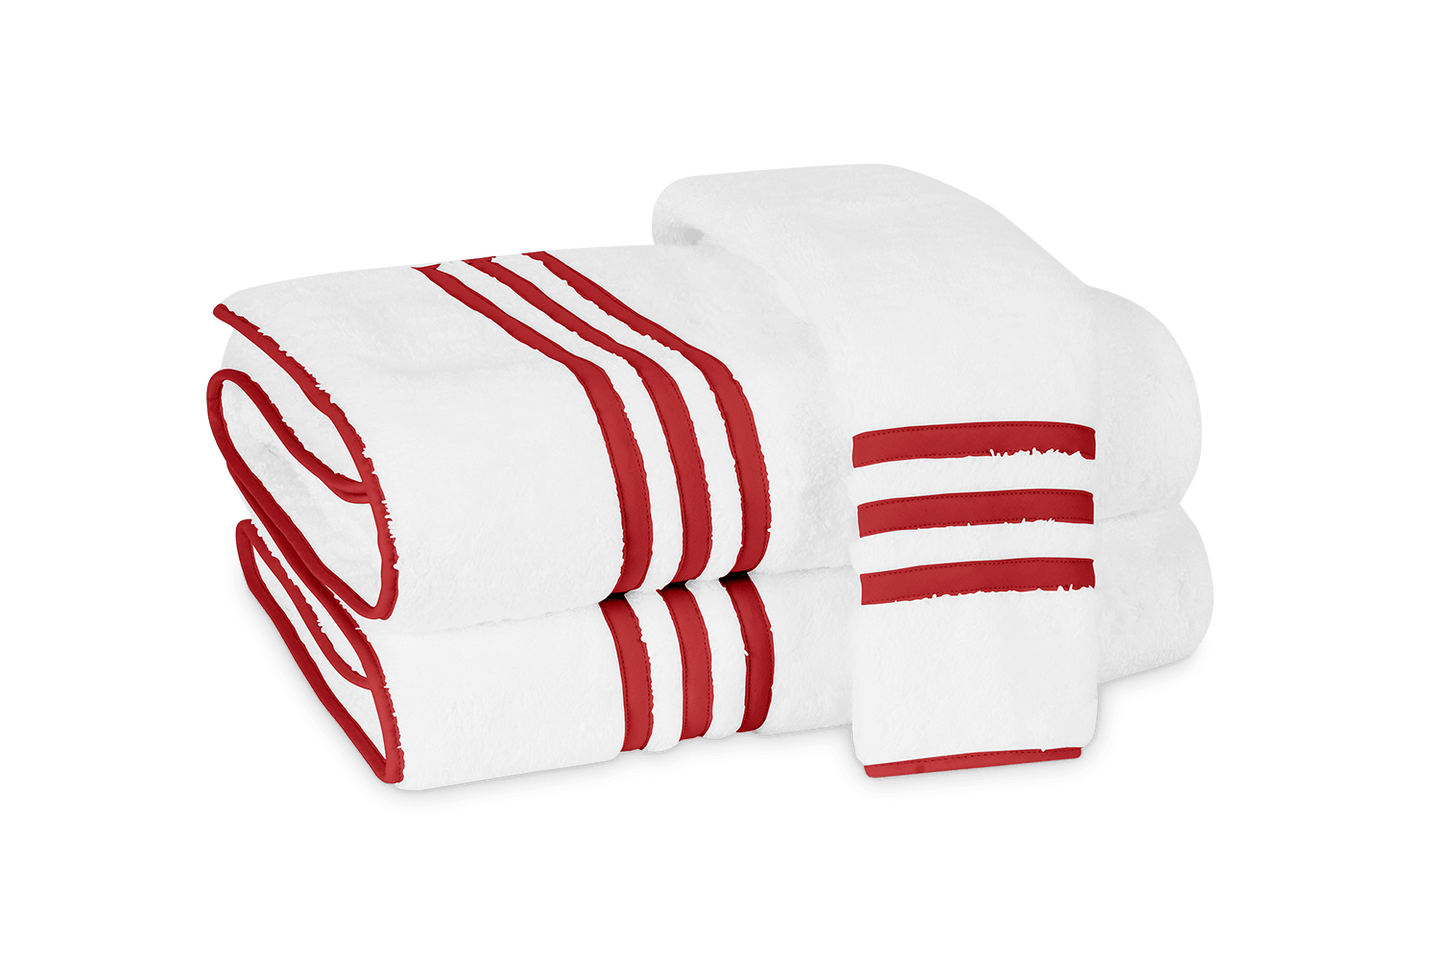 Newport Towel